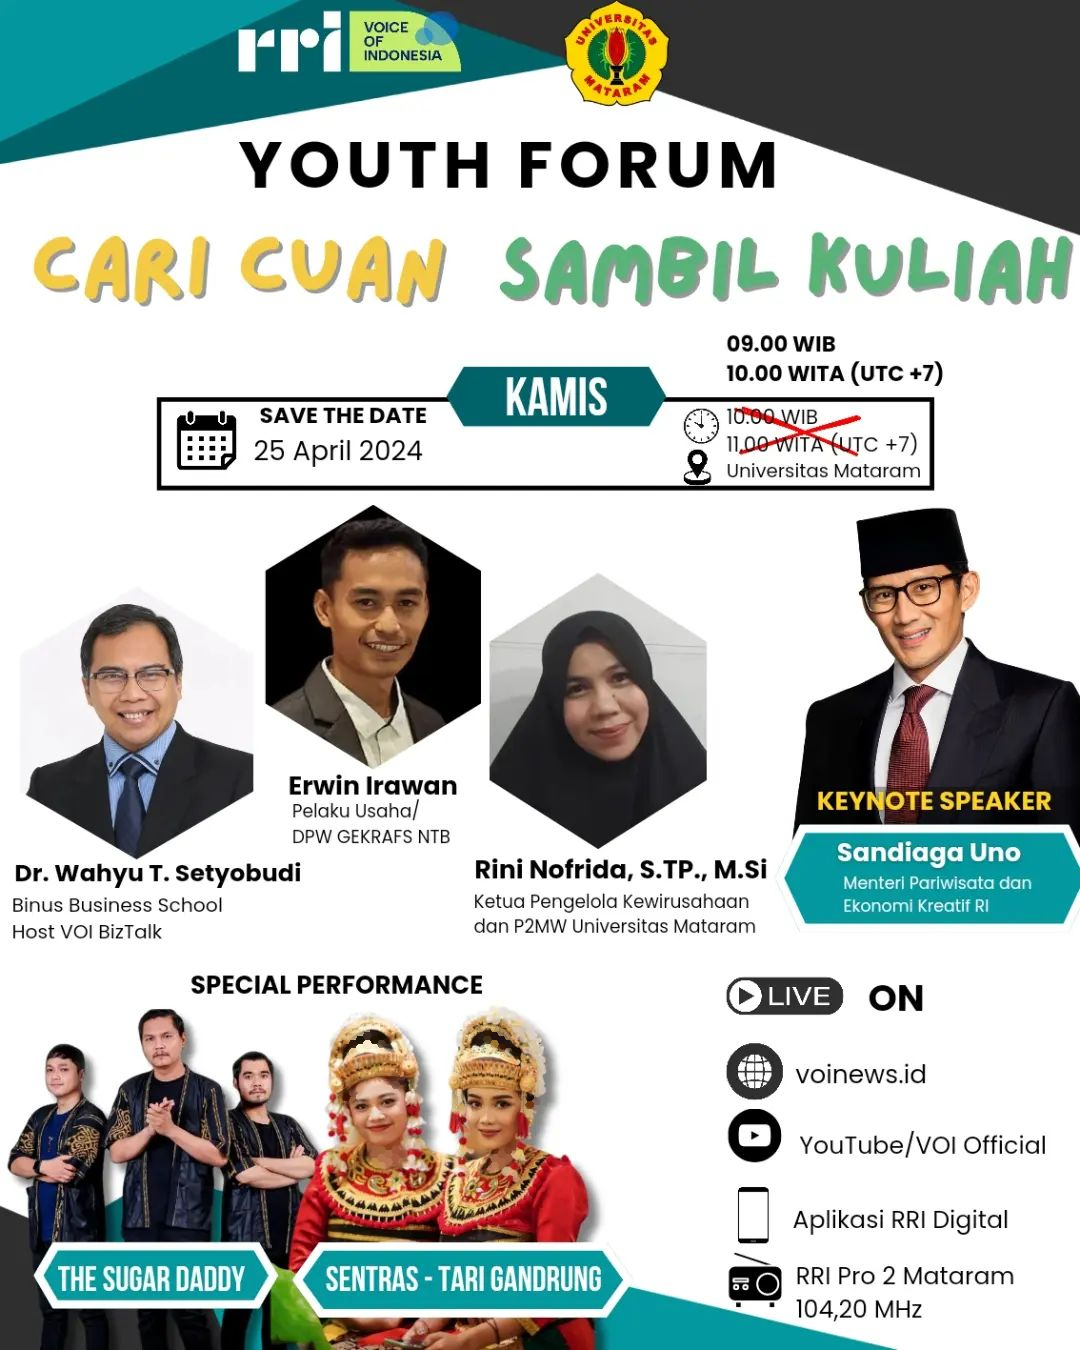 Poster kegiatan Youth Forum yang diposkan di akun Instagram RRI Voice of Indonesia, Rabu (24/4/2024), dengan pembaruan pada waktu kegiatan. (Foto: Instagram @voi__official)